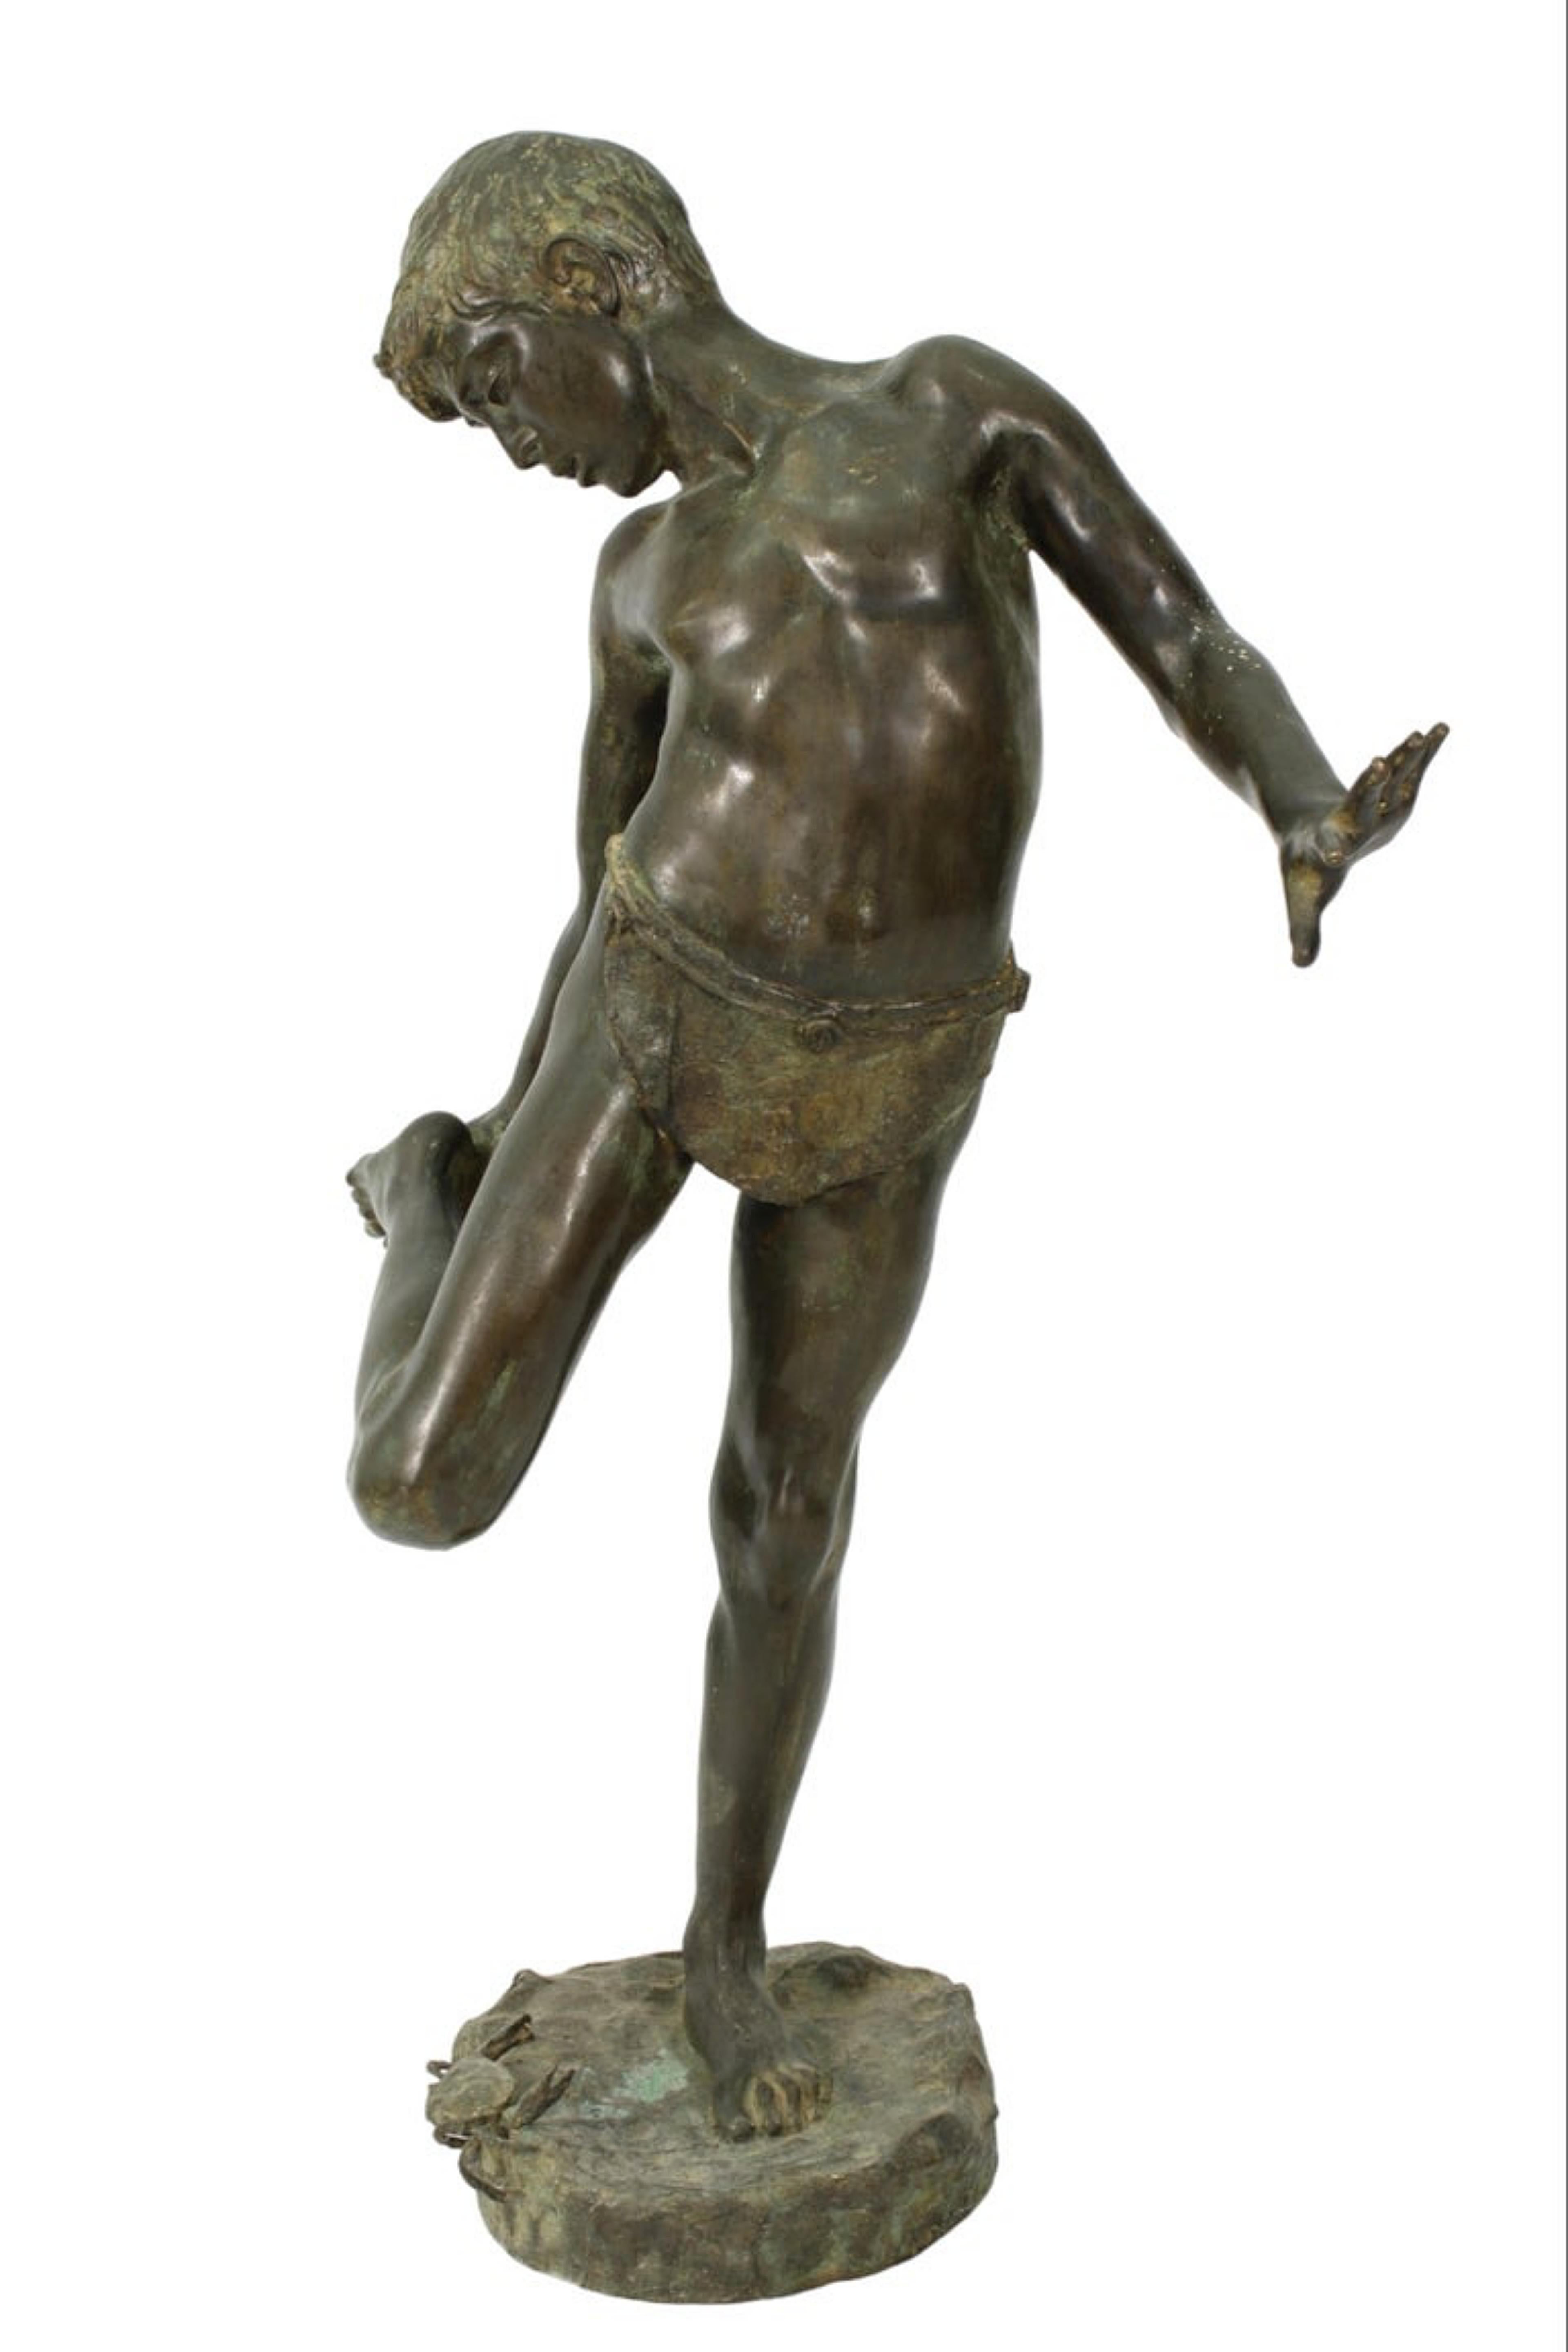 Spektakuläre Skulptur aus patinierter Bronze, die 